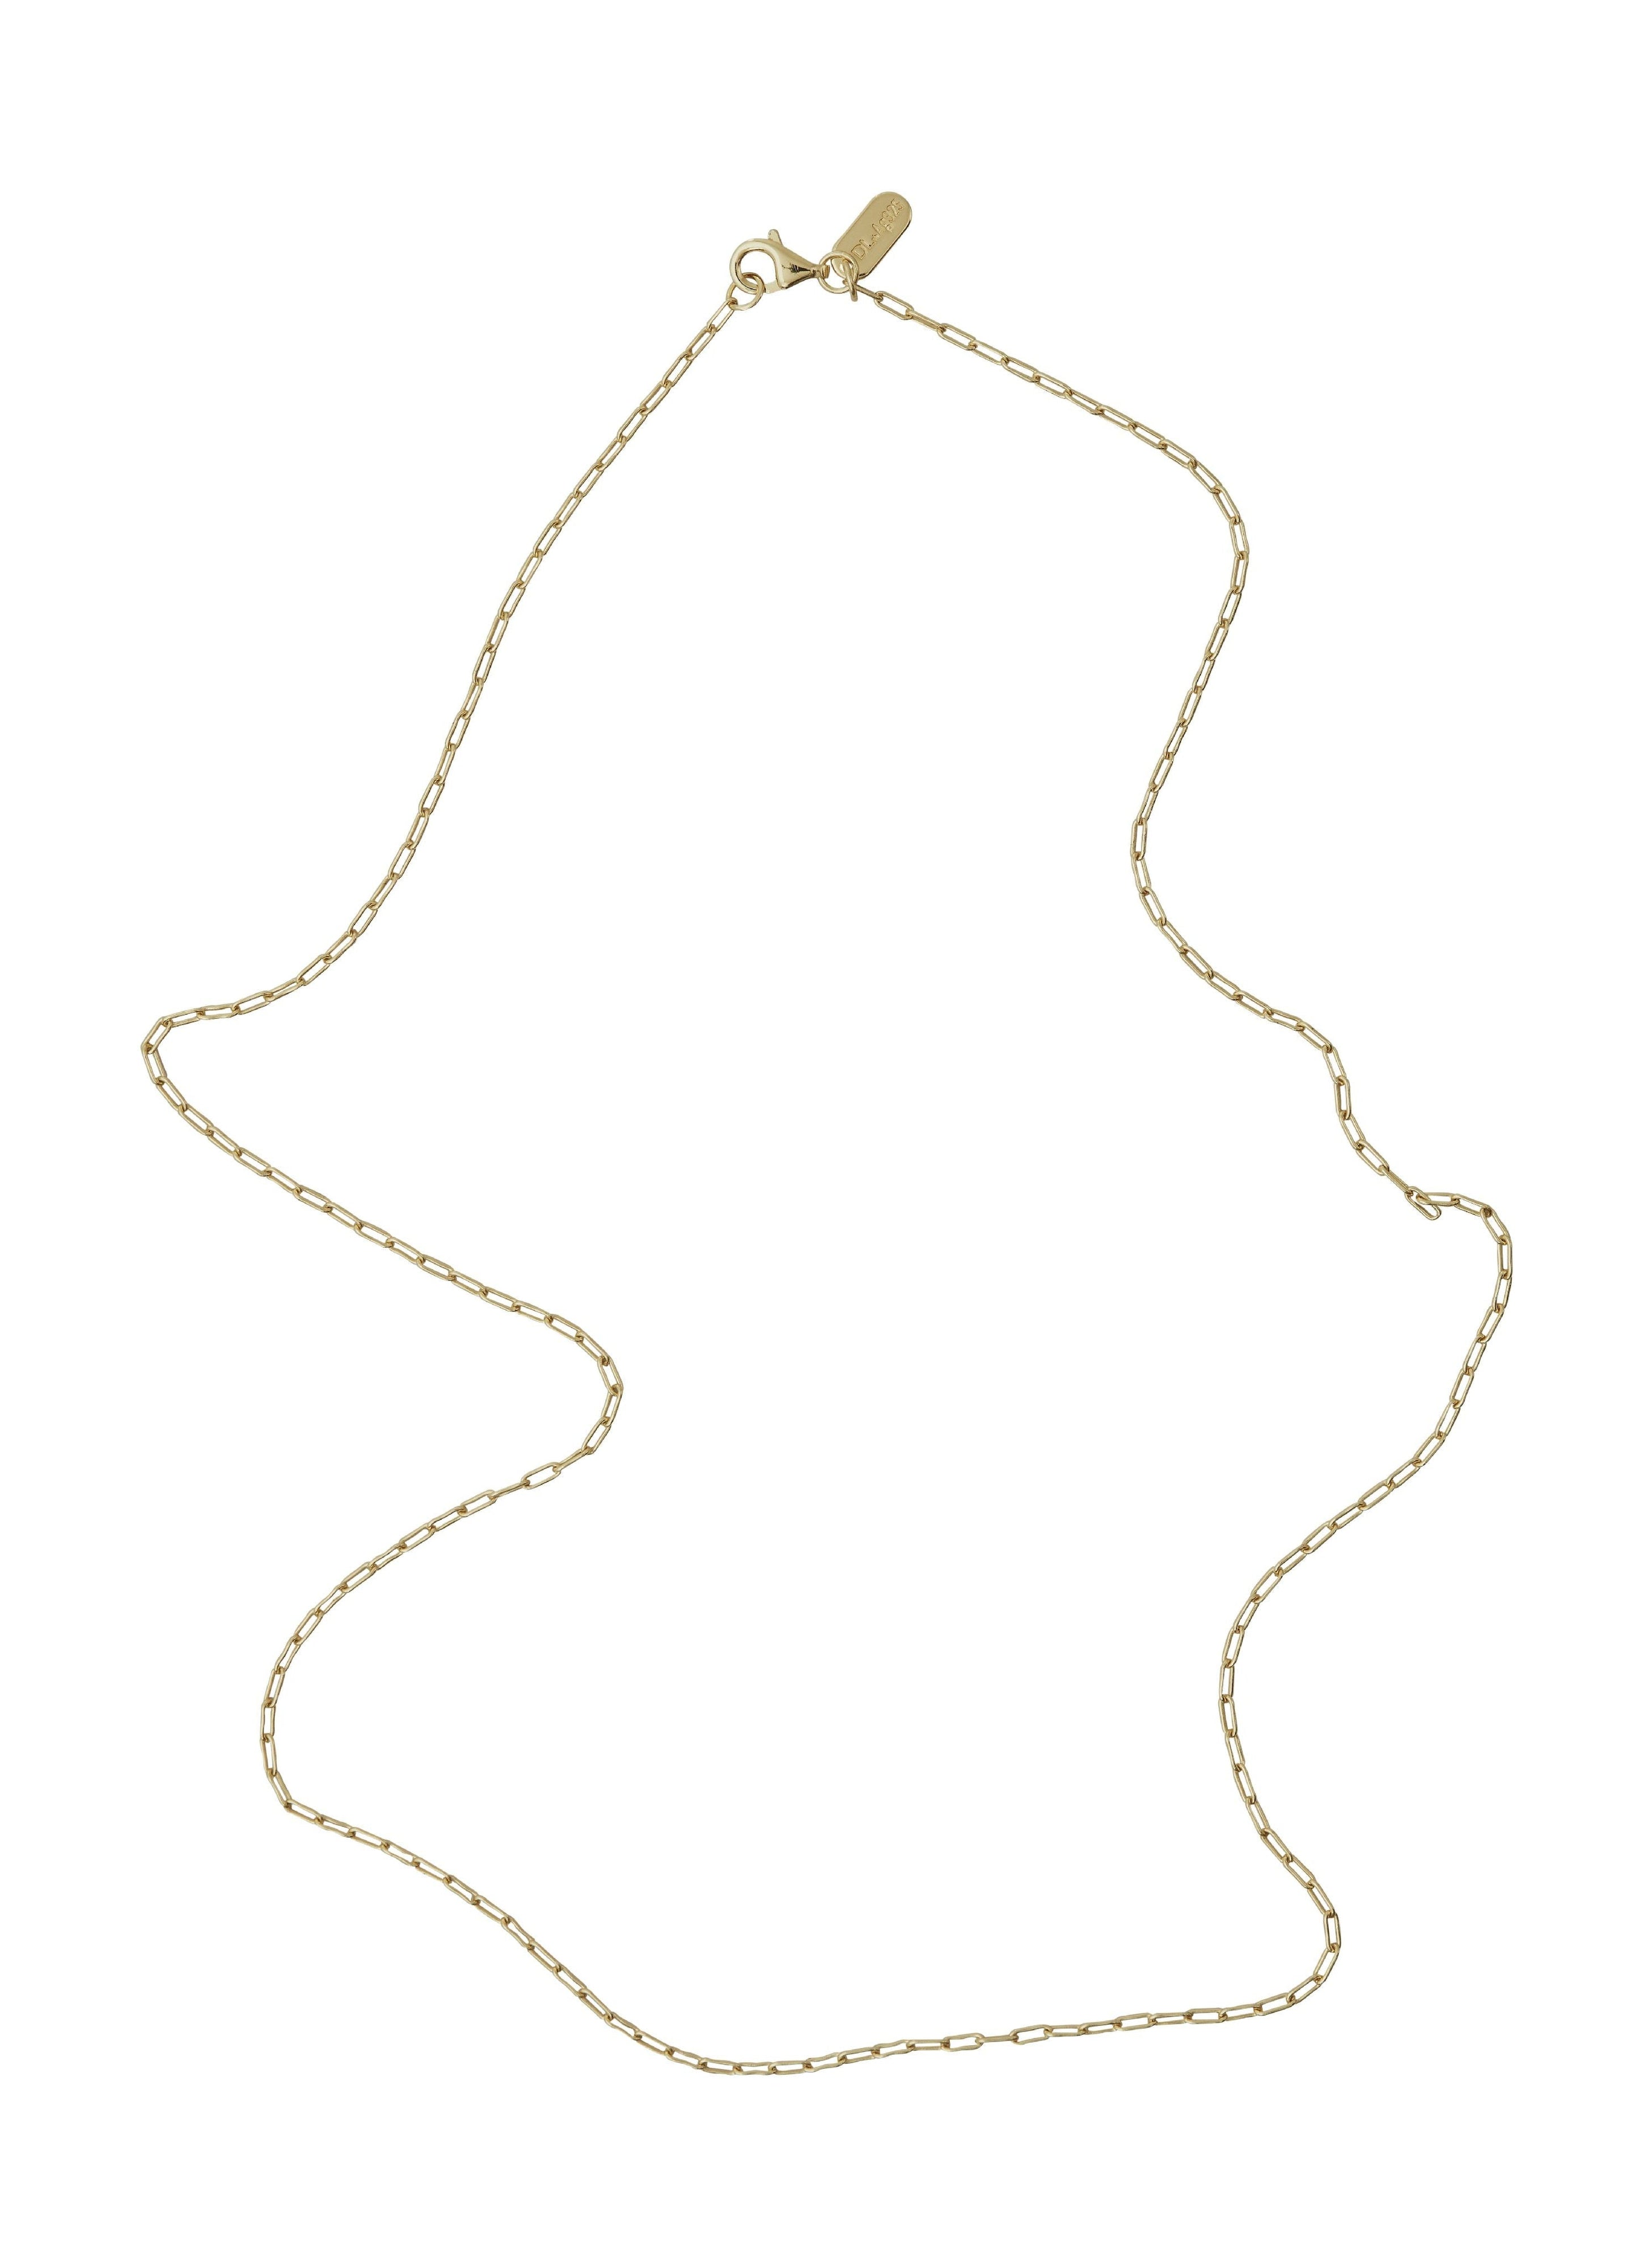 Letras de diseño Gold de cadena de enlace cuadrado, 60 cm